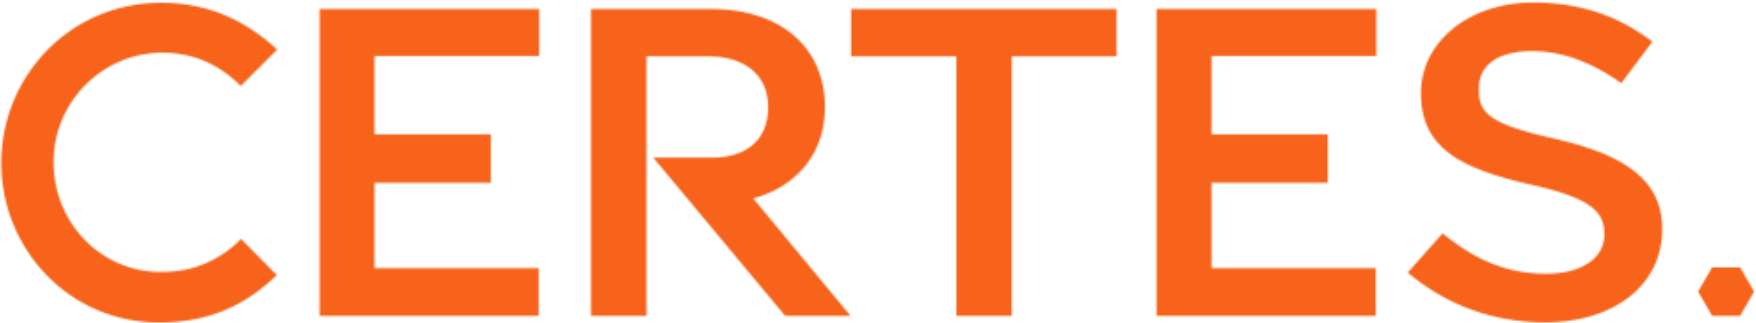 Logo Certes